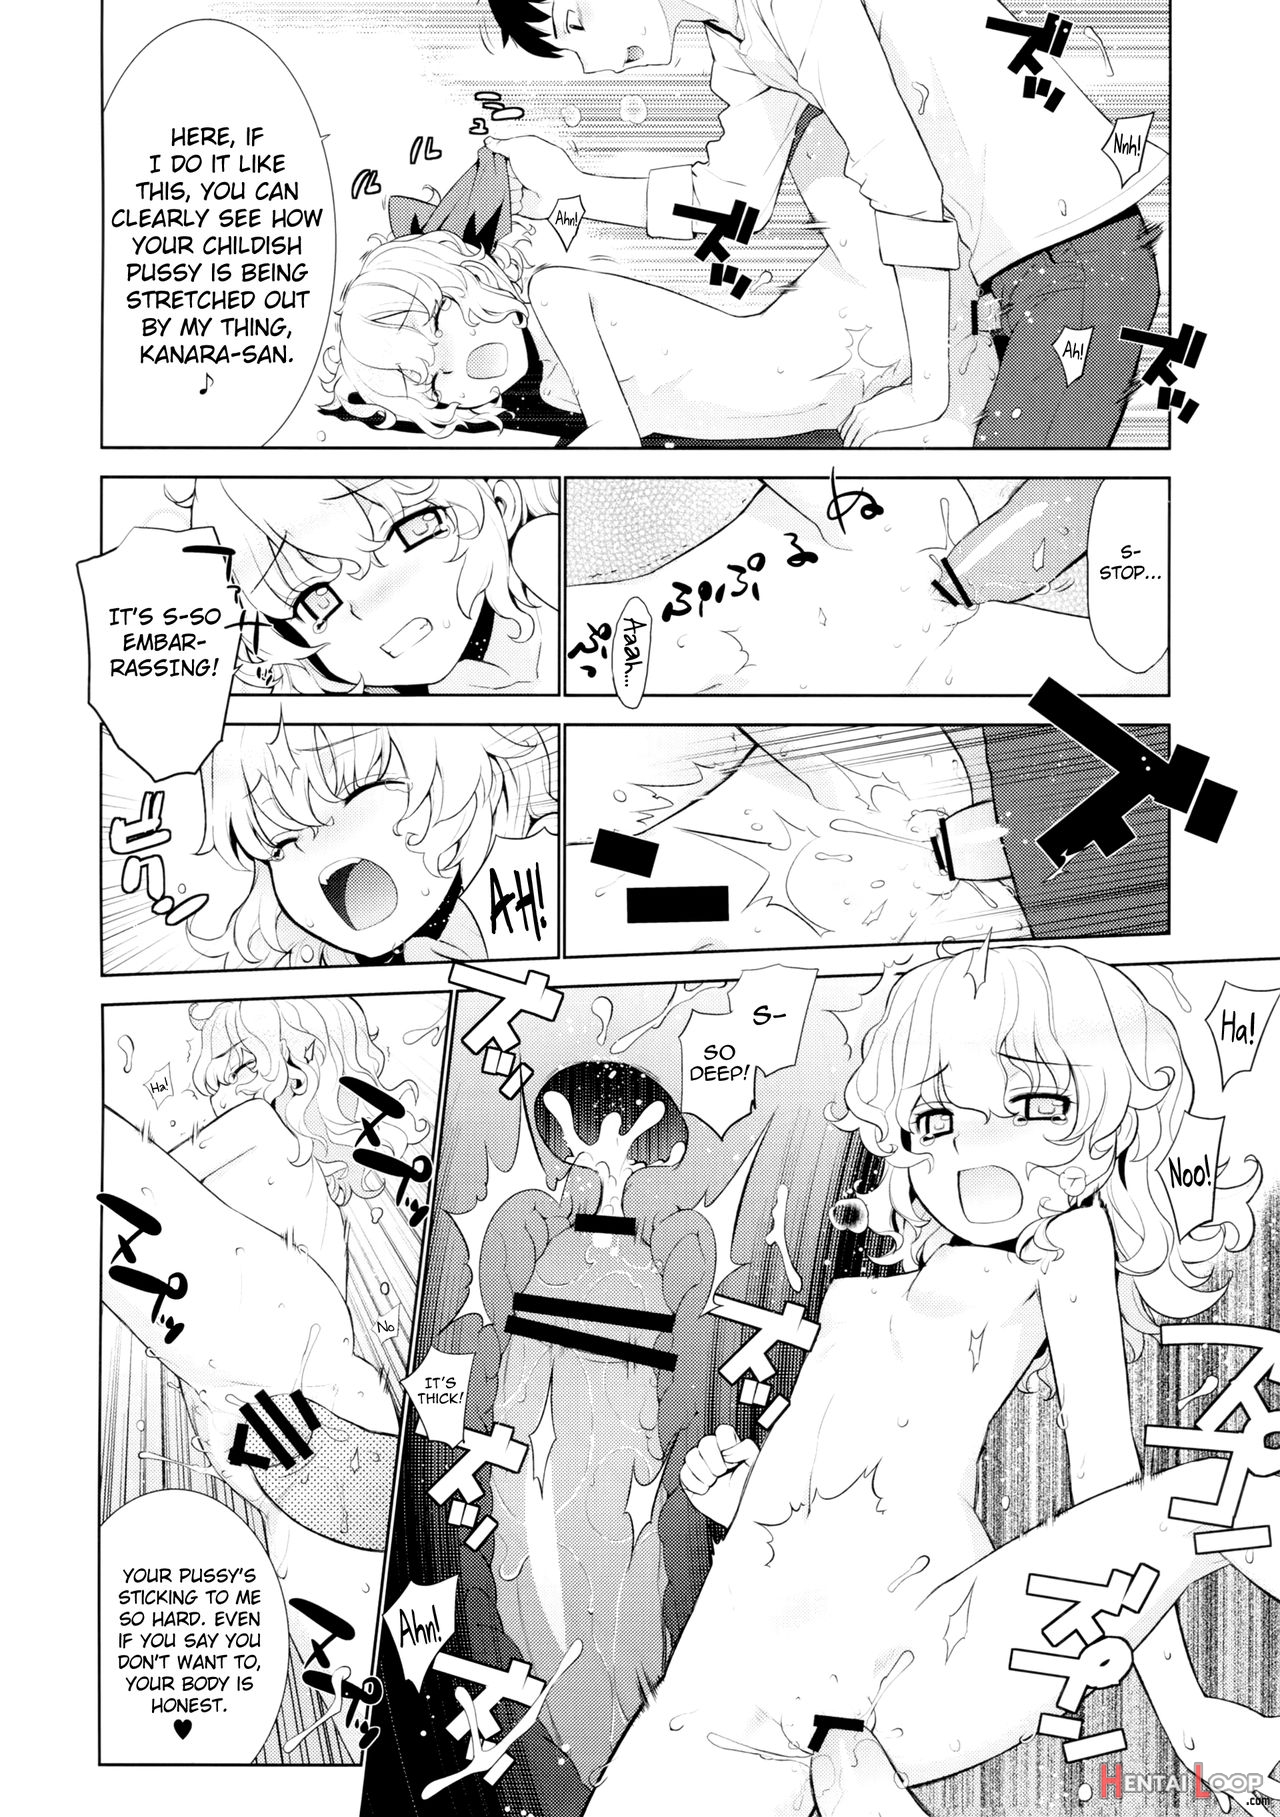 Kanara-sama No Nichijou Go page 20